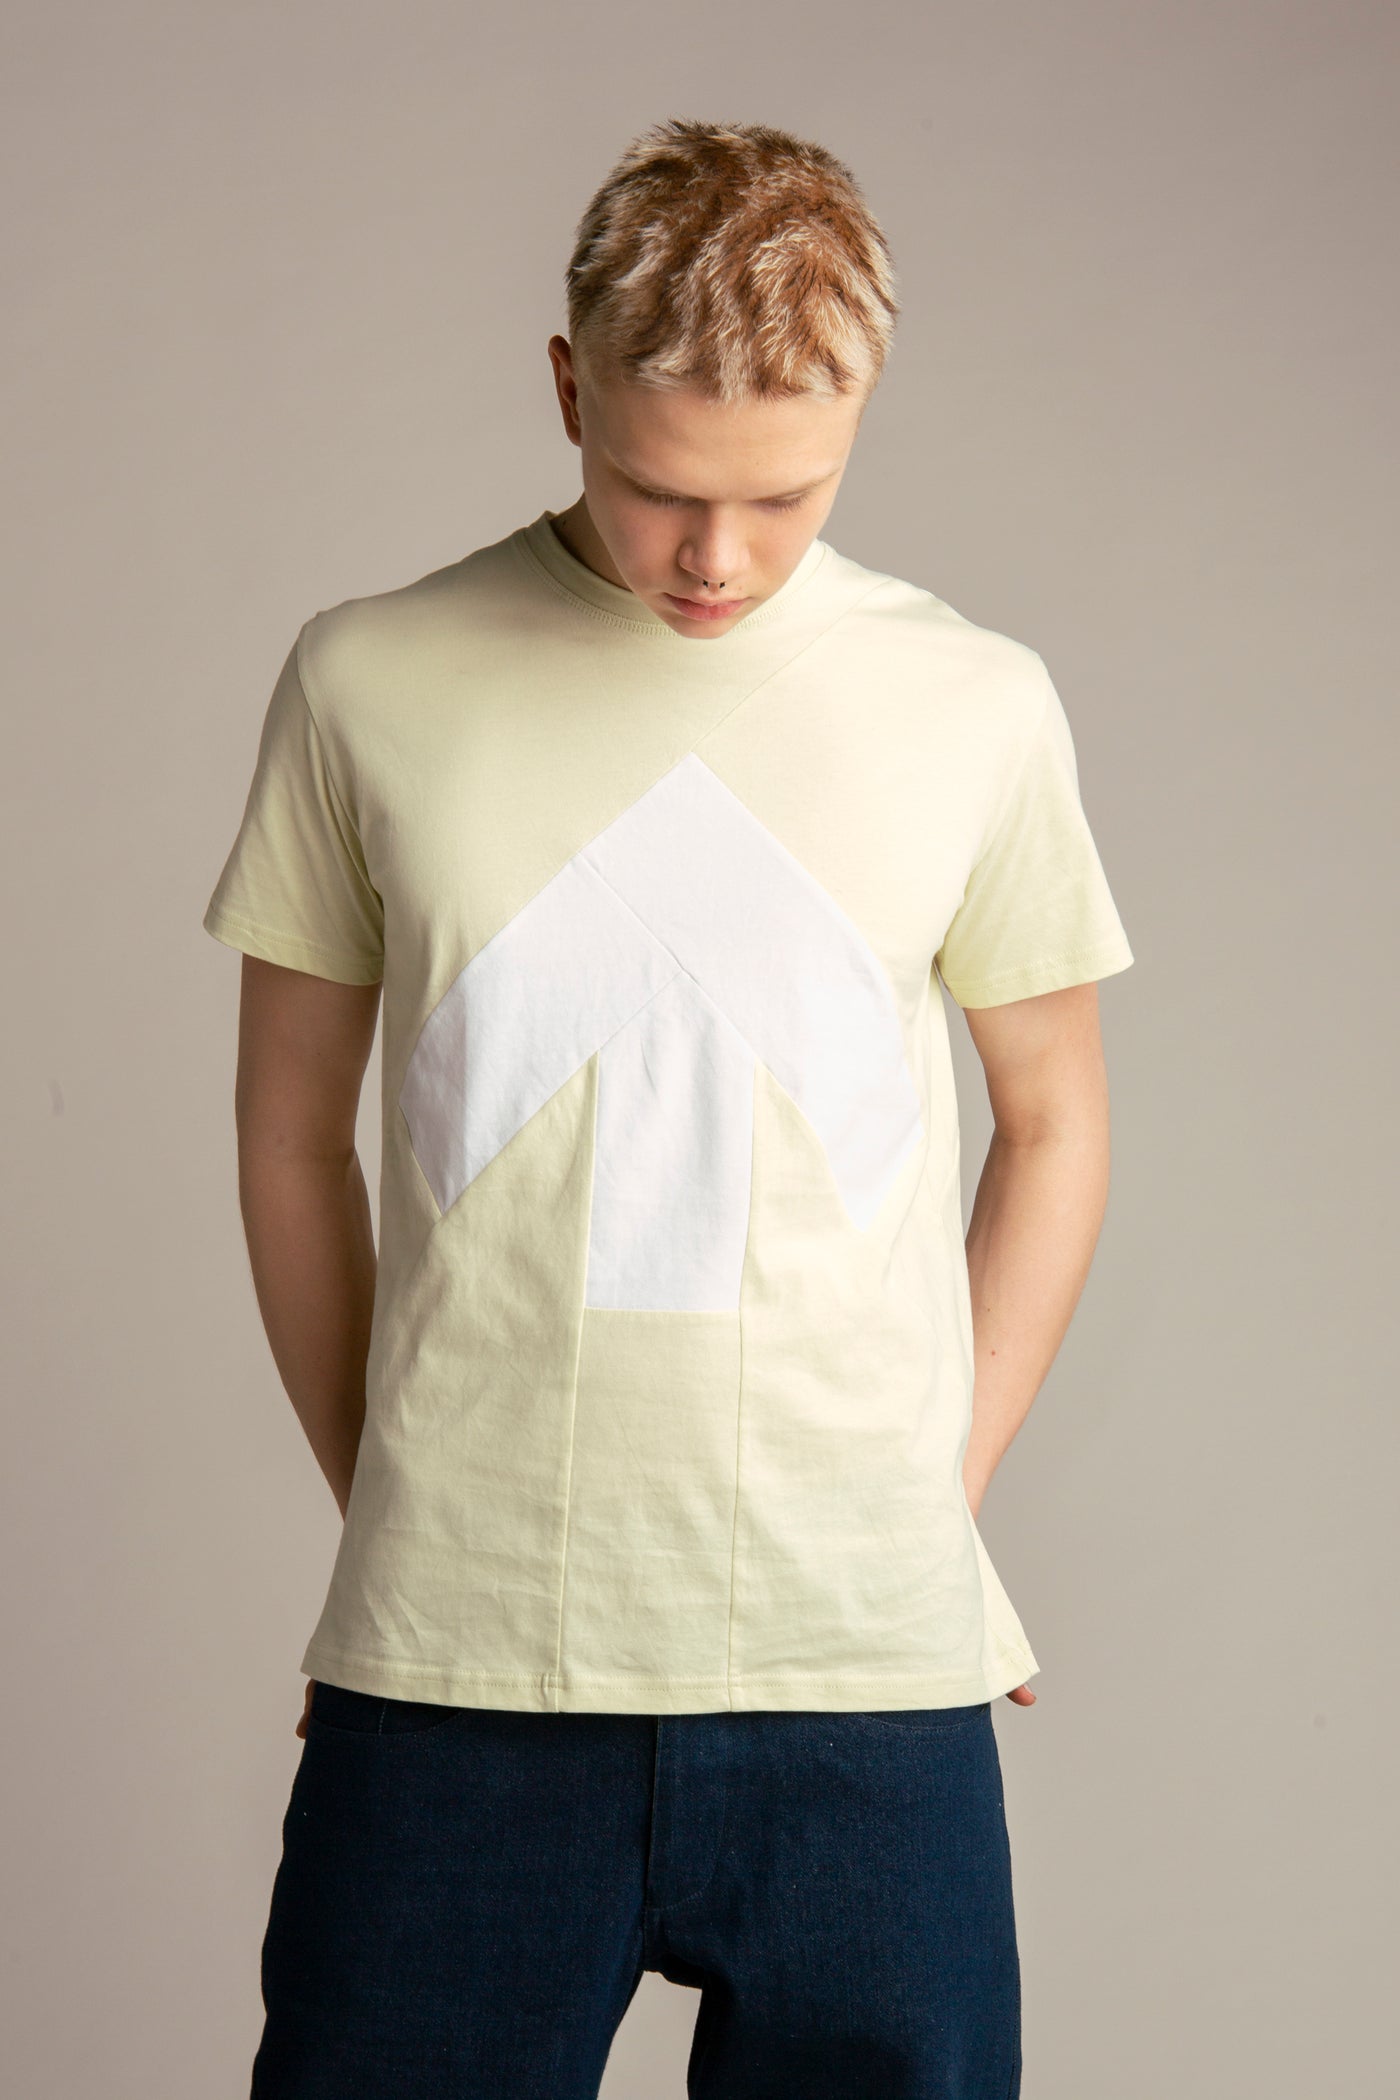 Up-shirt for men | Light green, white